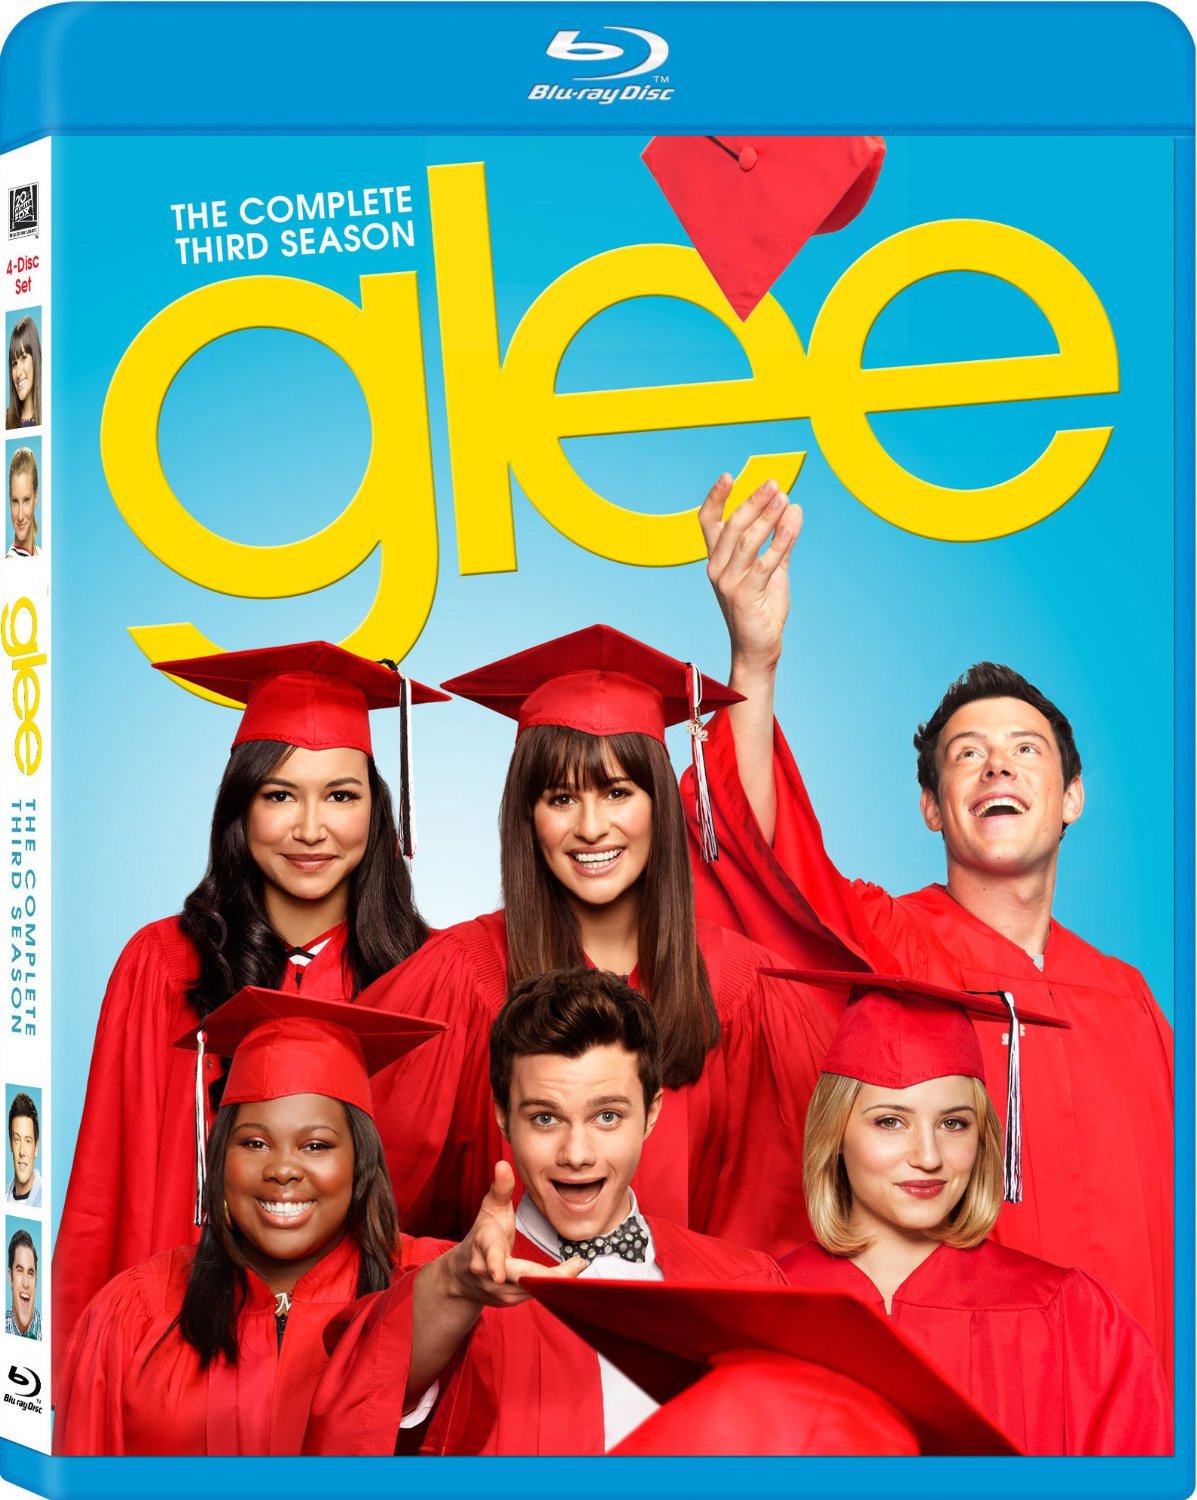 Glee: Season 3